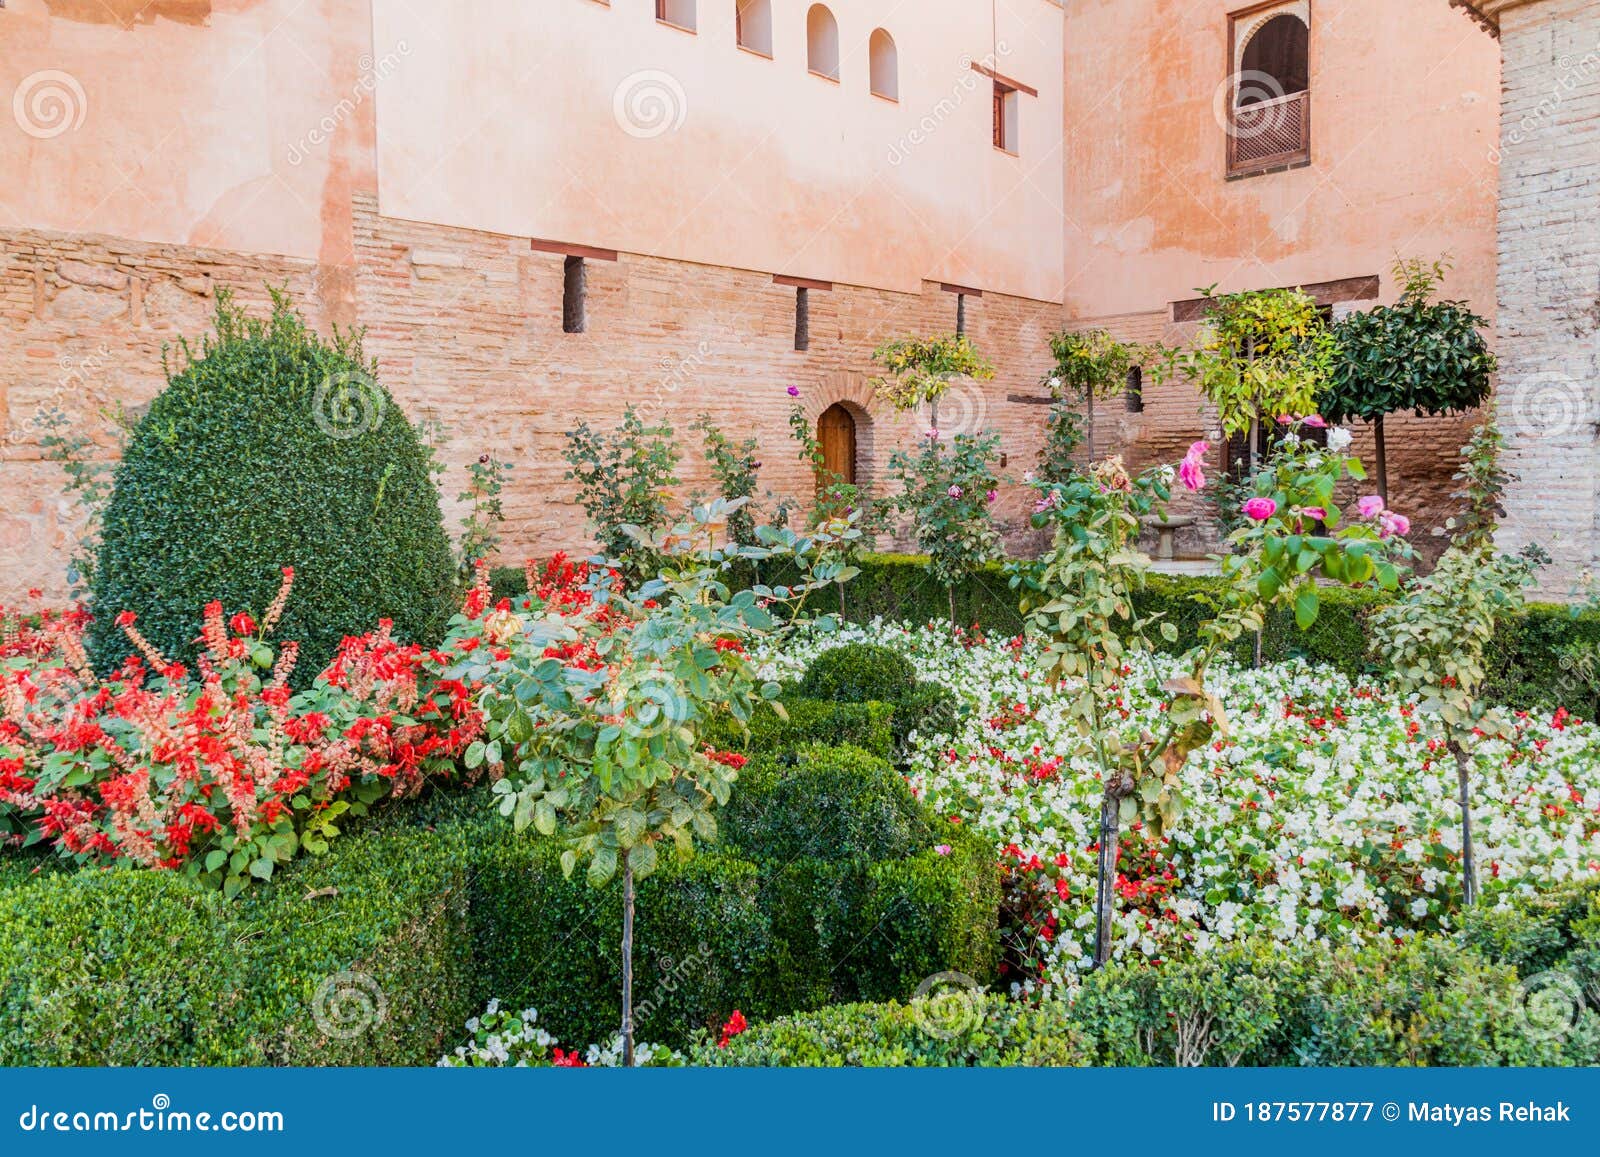 small garden at nasrid palaces (palacios nazaries) at alhambra in granada, spa